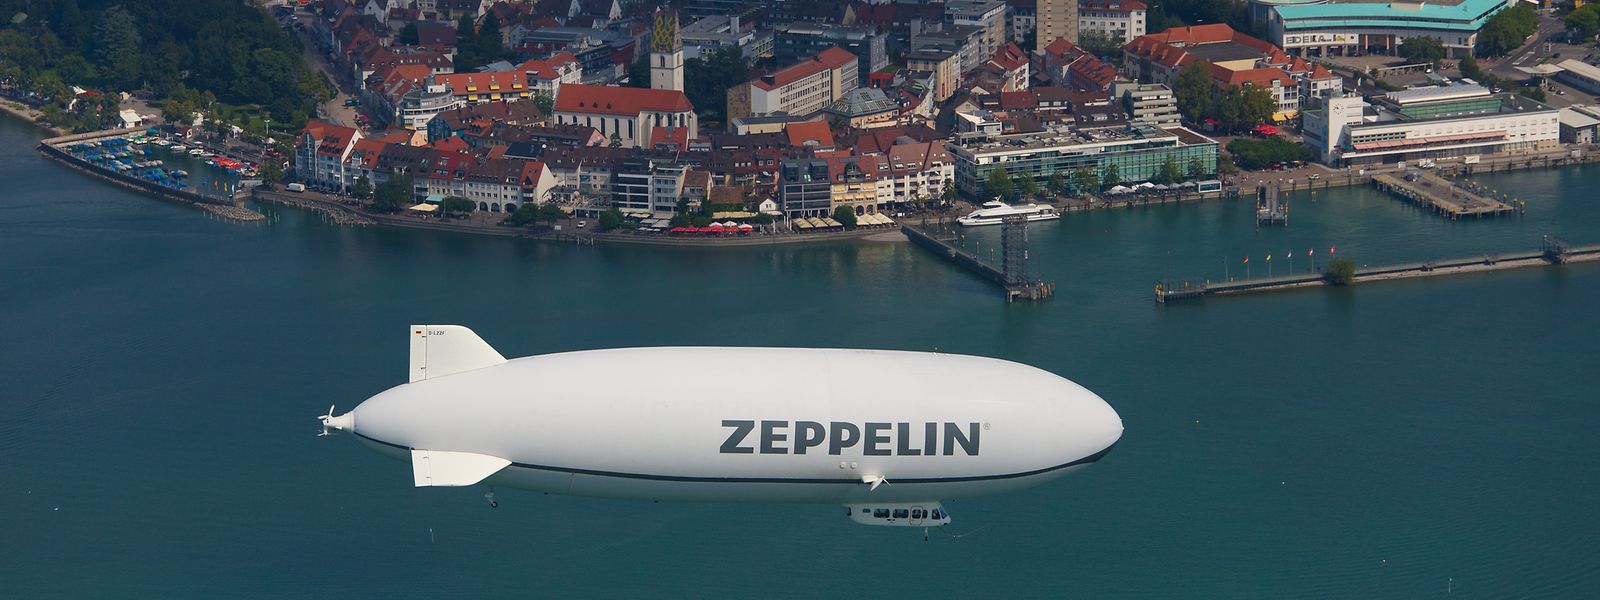 Seit einigen Jahren sind die über dem Bodensee kreisenden Zeppeline wieder zu einem gewohnten Bild geworden.  